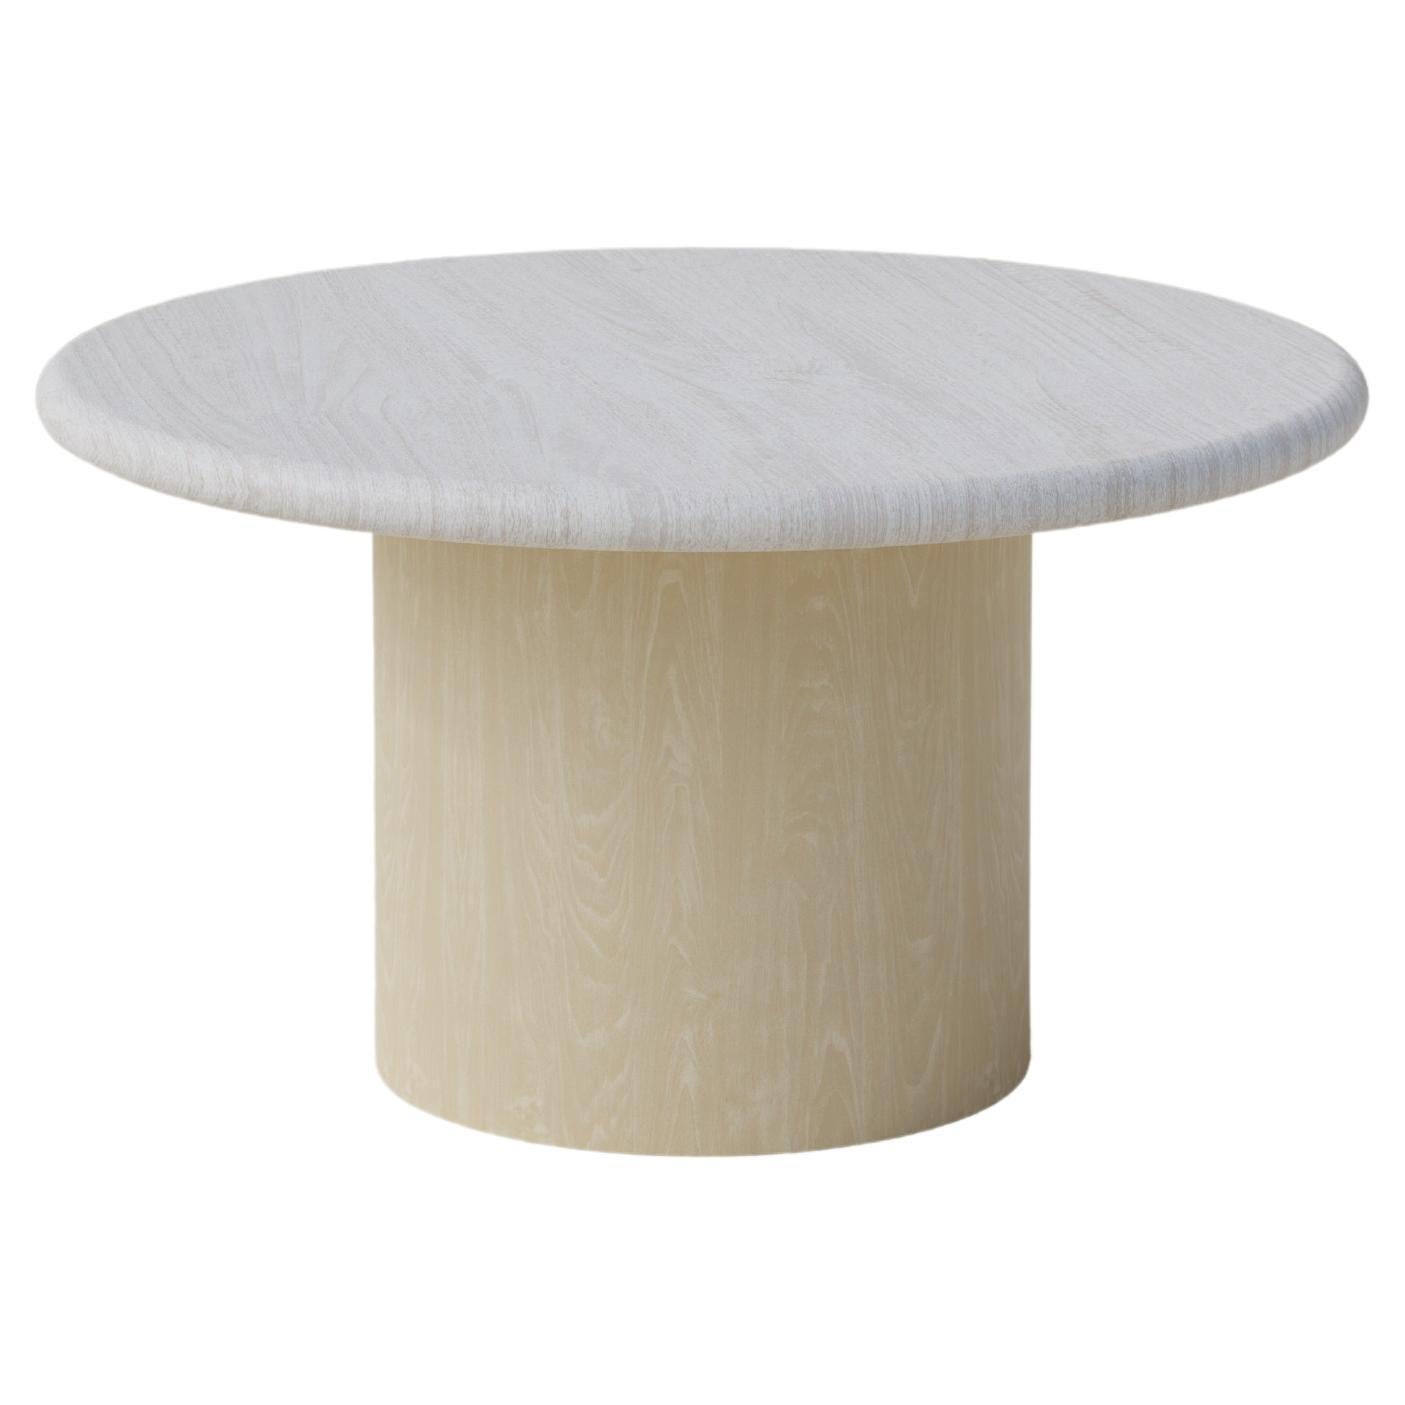 Table basse en forme de goutte d'eau, 600, chêne blanc / frêne